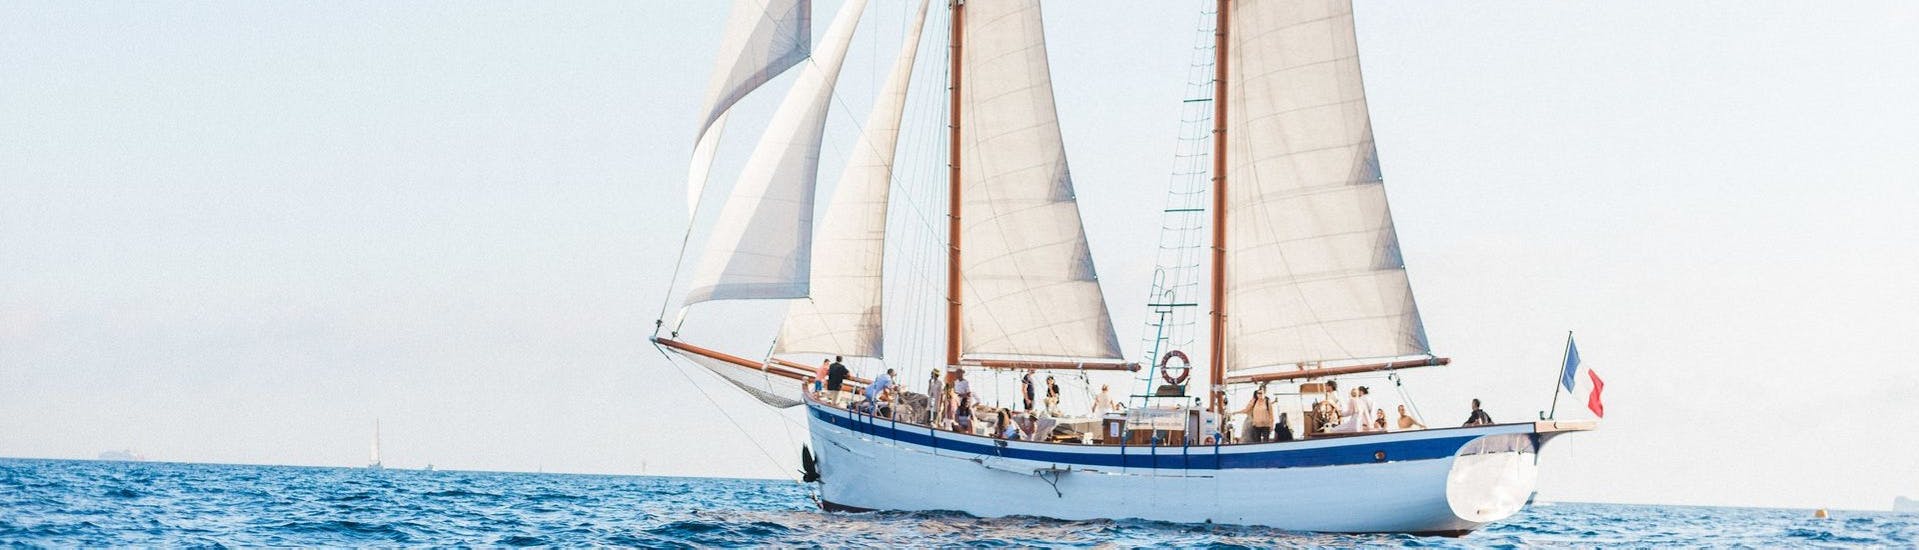 Nuestro orgulloso barco La Goélette Alliance fotografiado durante un paseo privado en velero a las calas de Marsella o las islas Frioul.